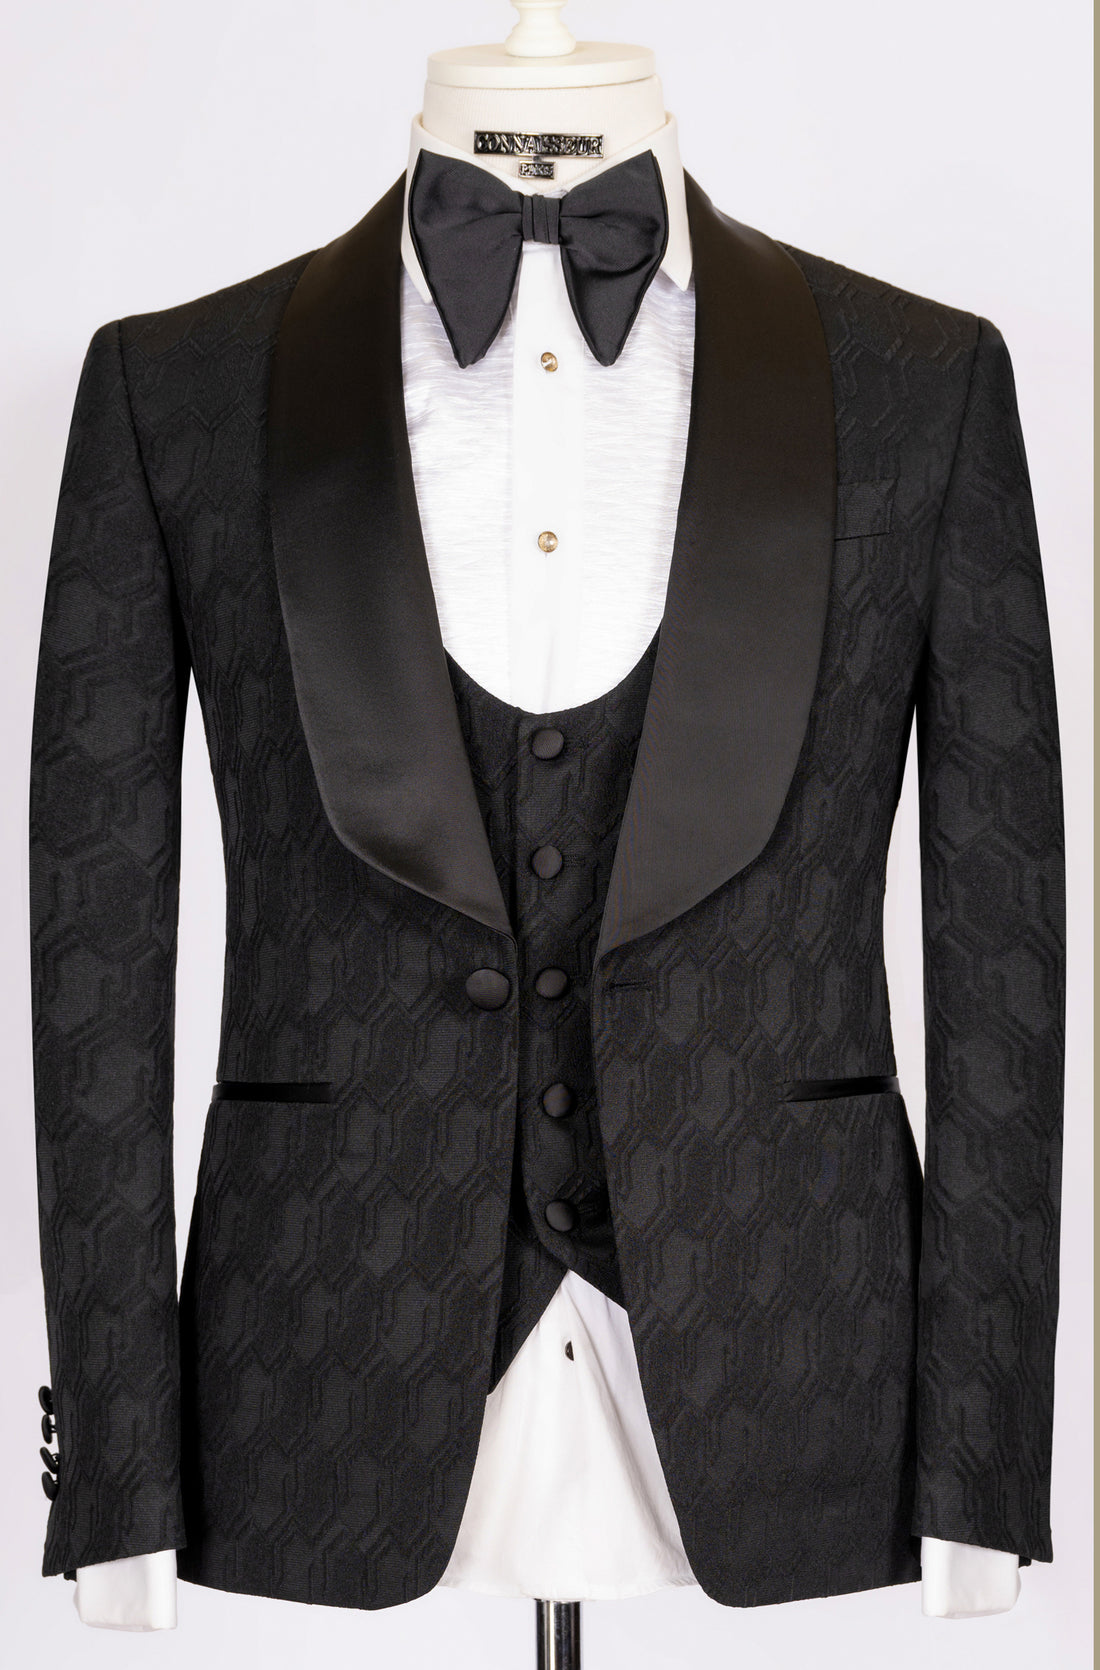 Connaisseur - Black hexagon pattern 3-piece slim fit tuxedo with U vest